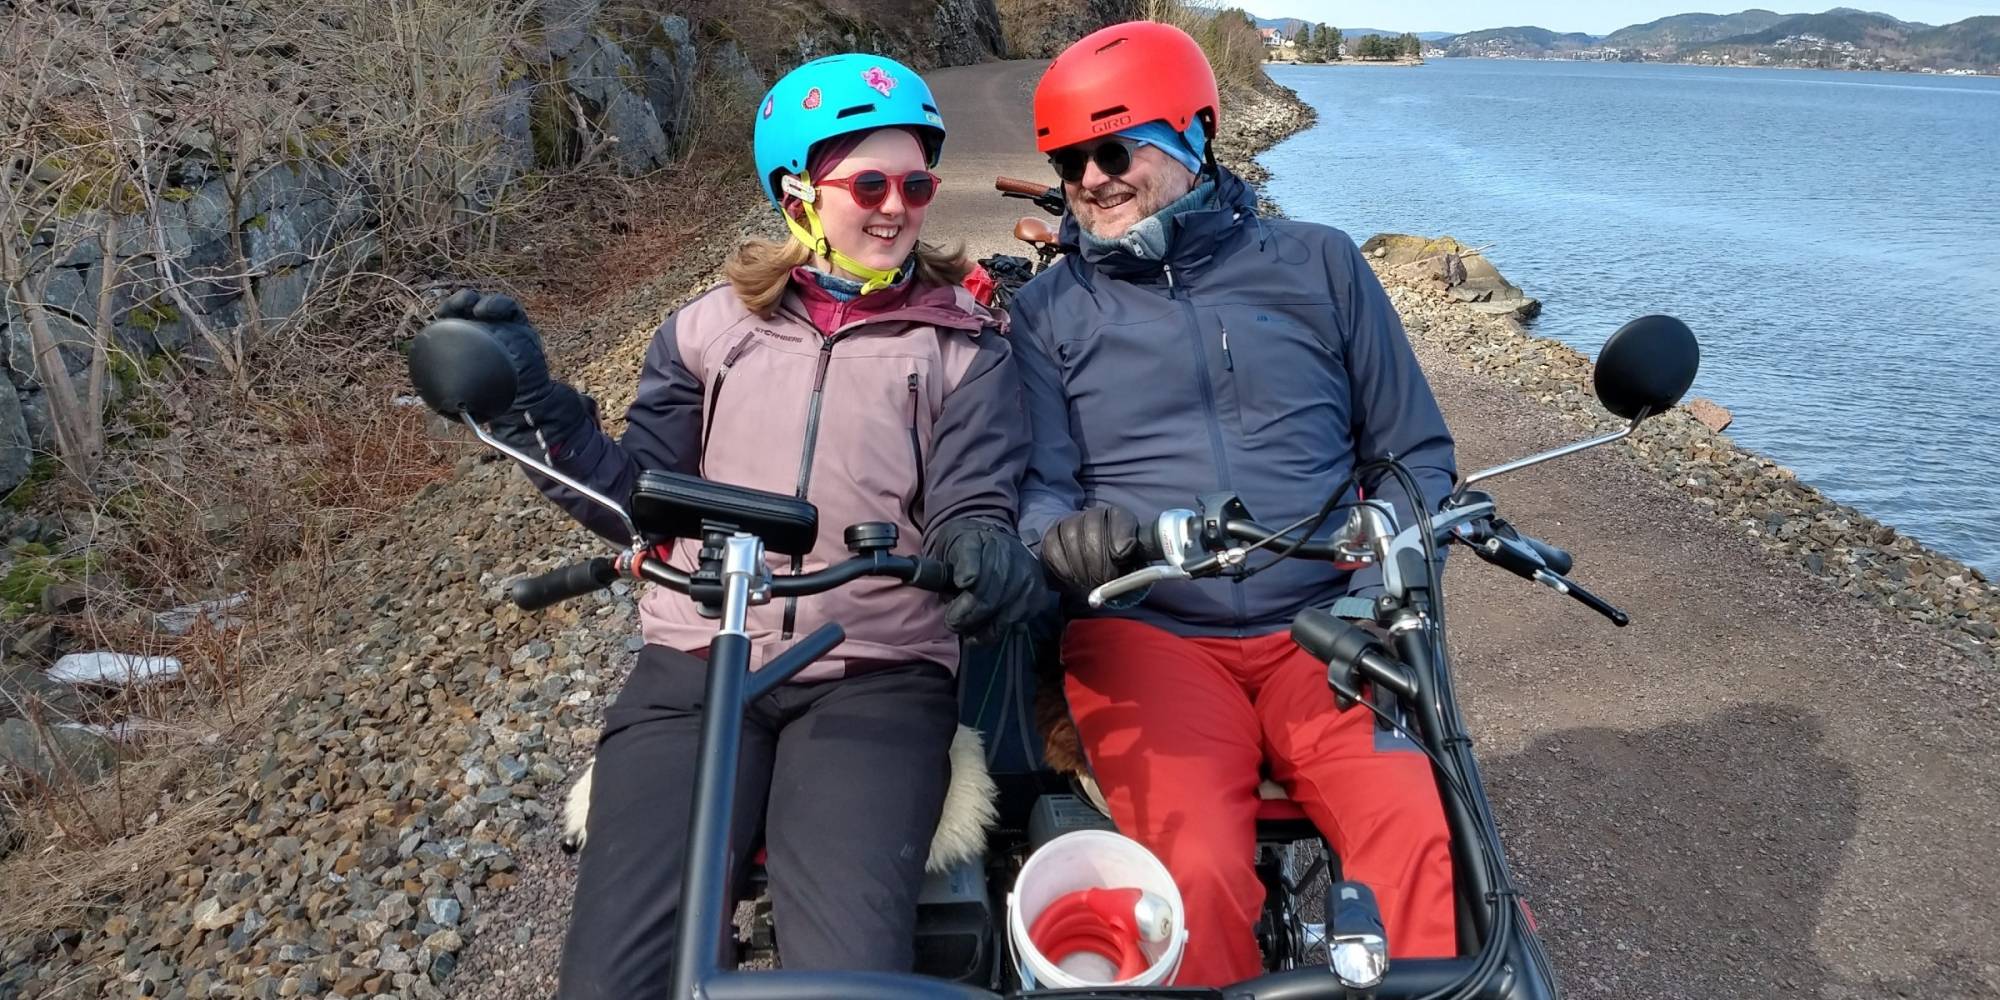 Sofie og pappa Kjartan Skogly Kversøy er ofte på sykkeltur med sin elektriske tandemsykkel. Det er lett å kommunisere når du sitter ved siden av hverandre på sykkel og du kan peke og kommentere det som du møter underveis. Foto: Eva Daae Kversøy